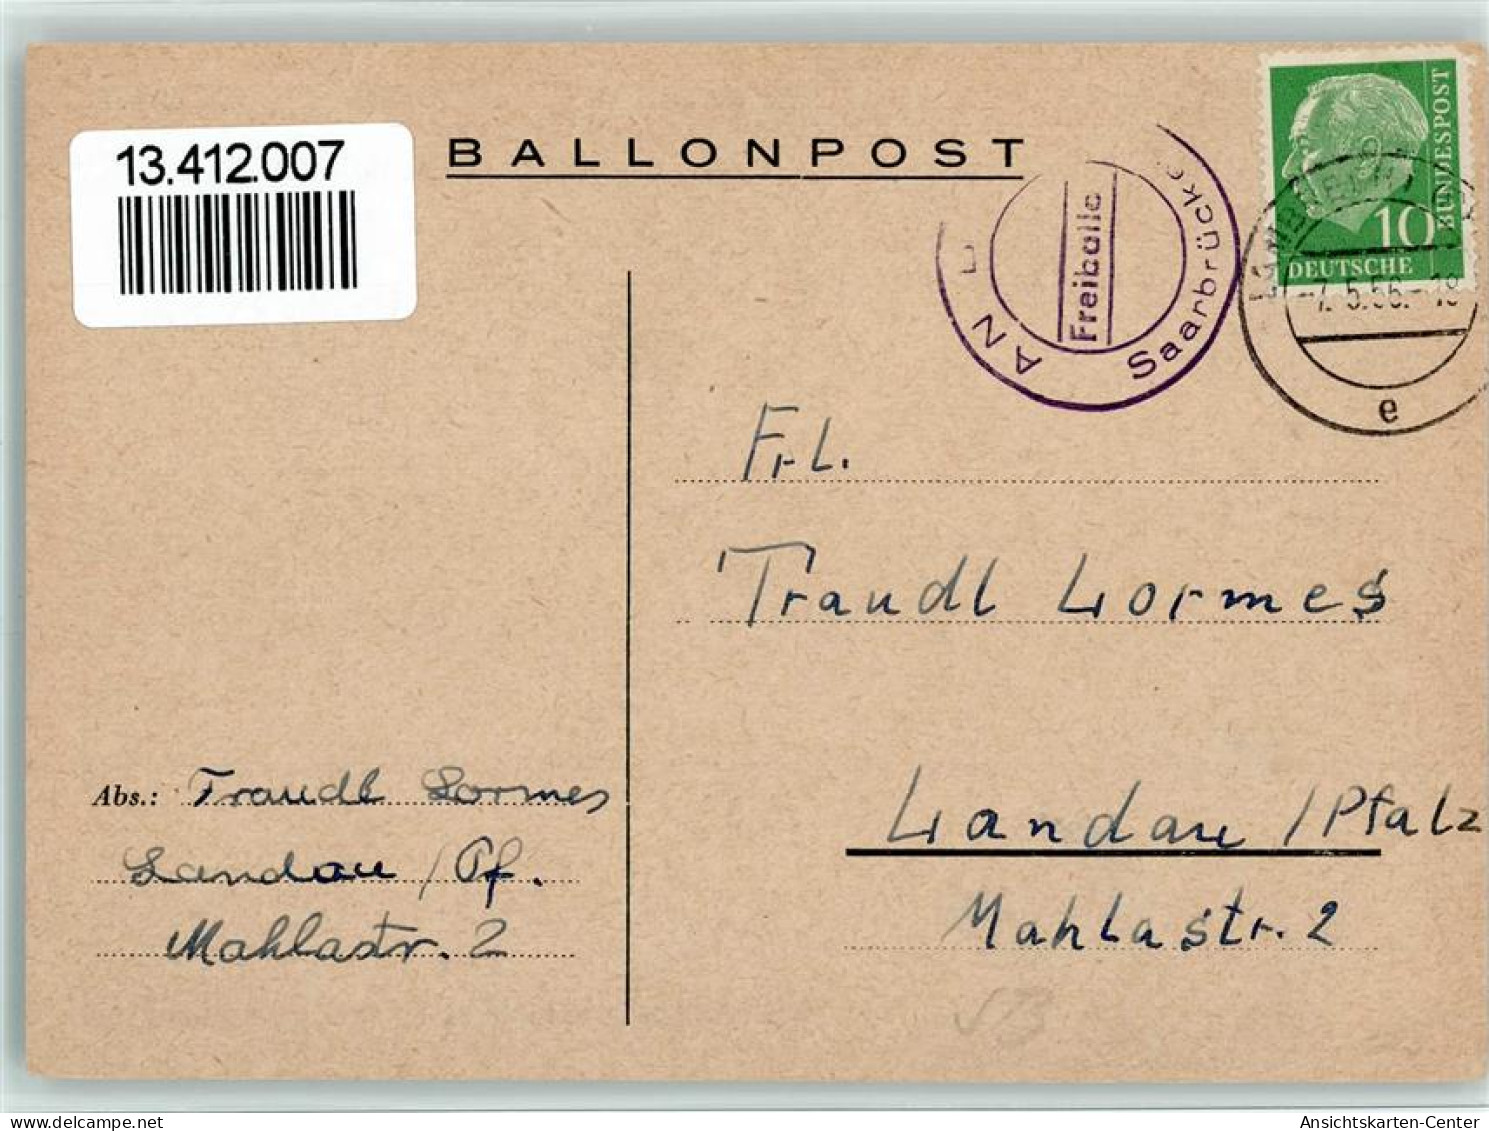 13412007 - Ballonpost Freiiballon Saarbruecken 1956 - Mongolfiere